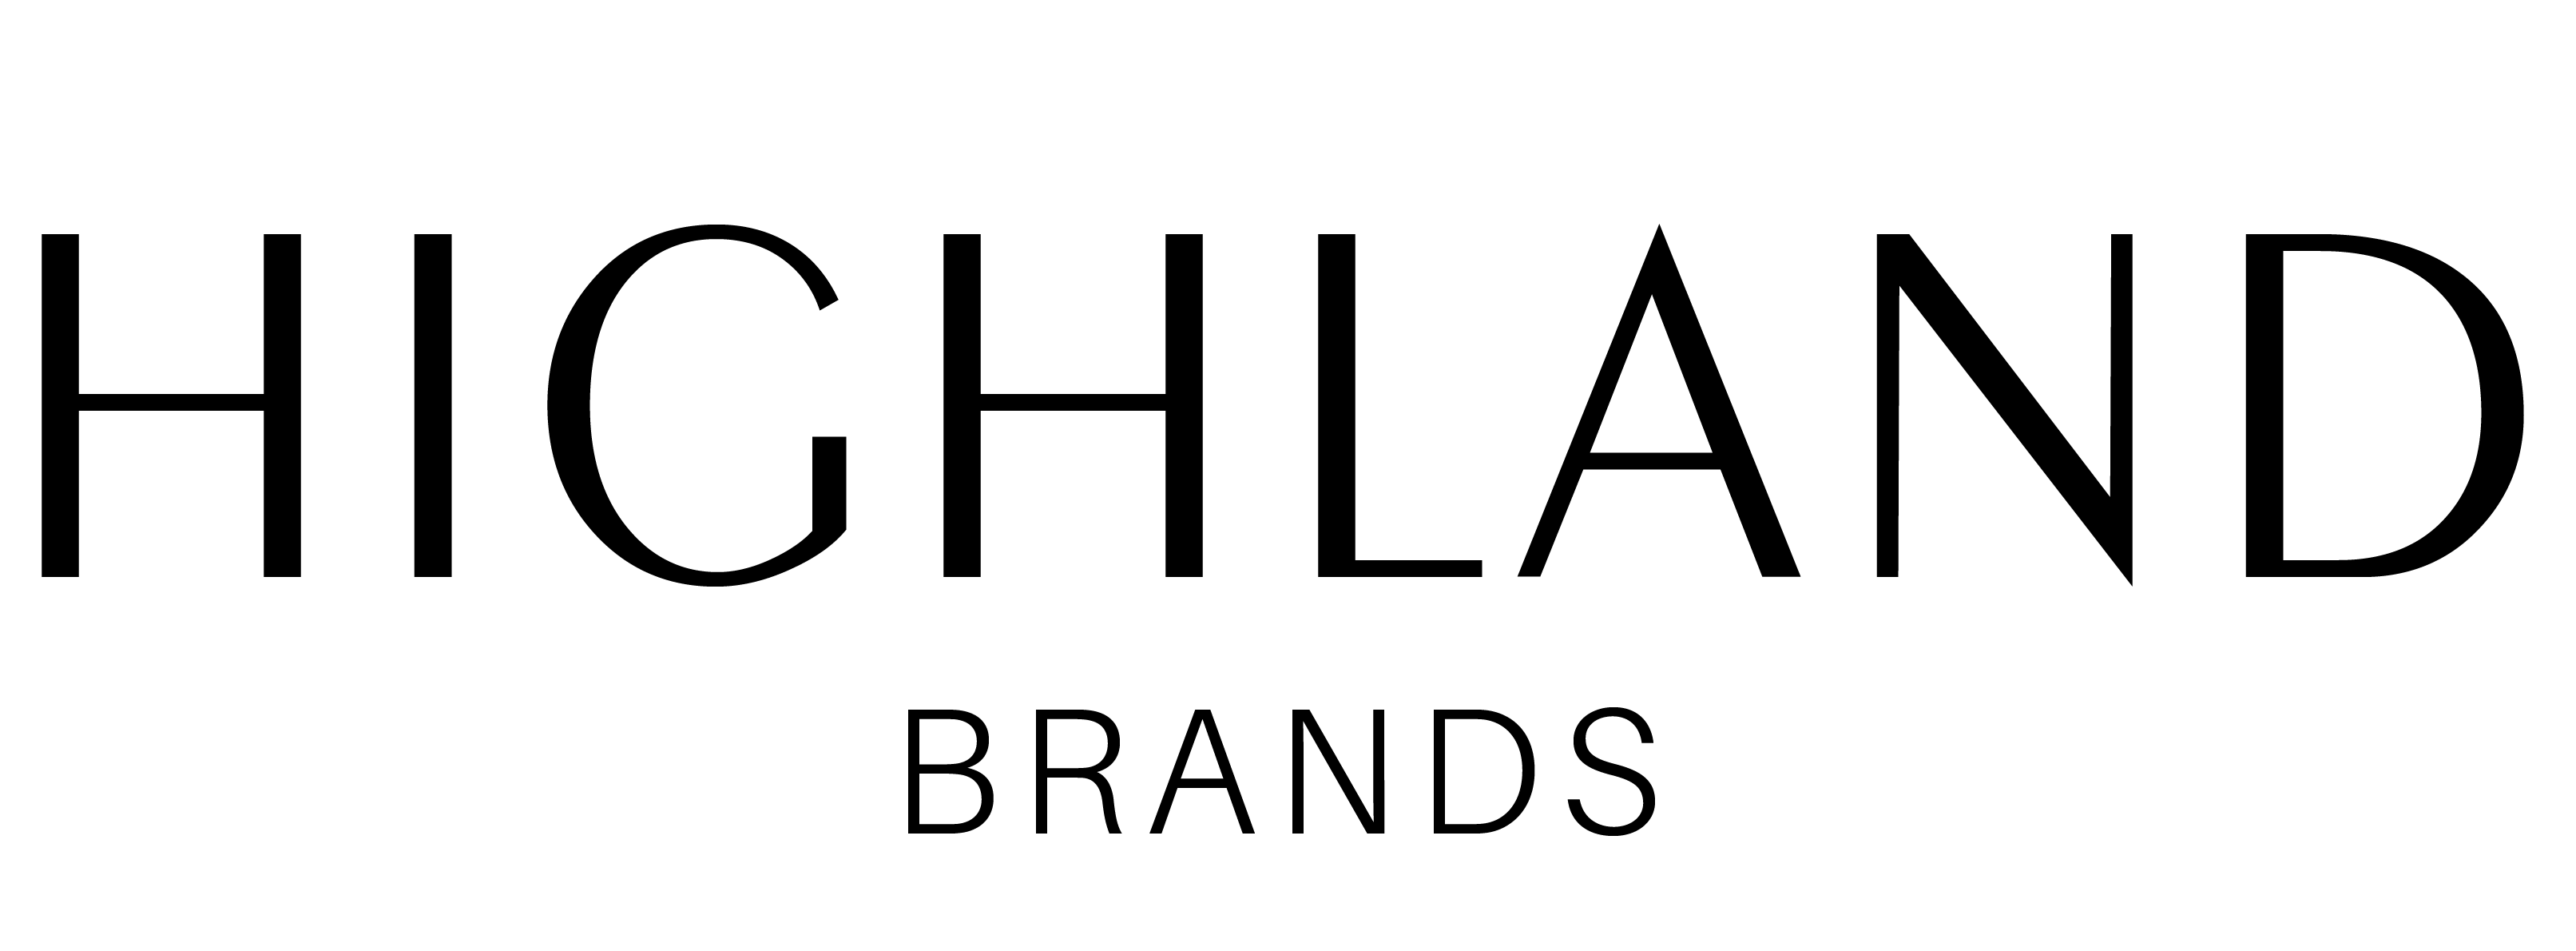 Highland Brands, S.A.